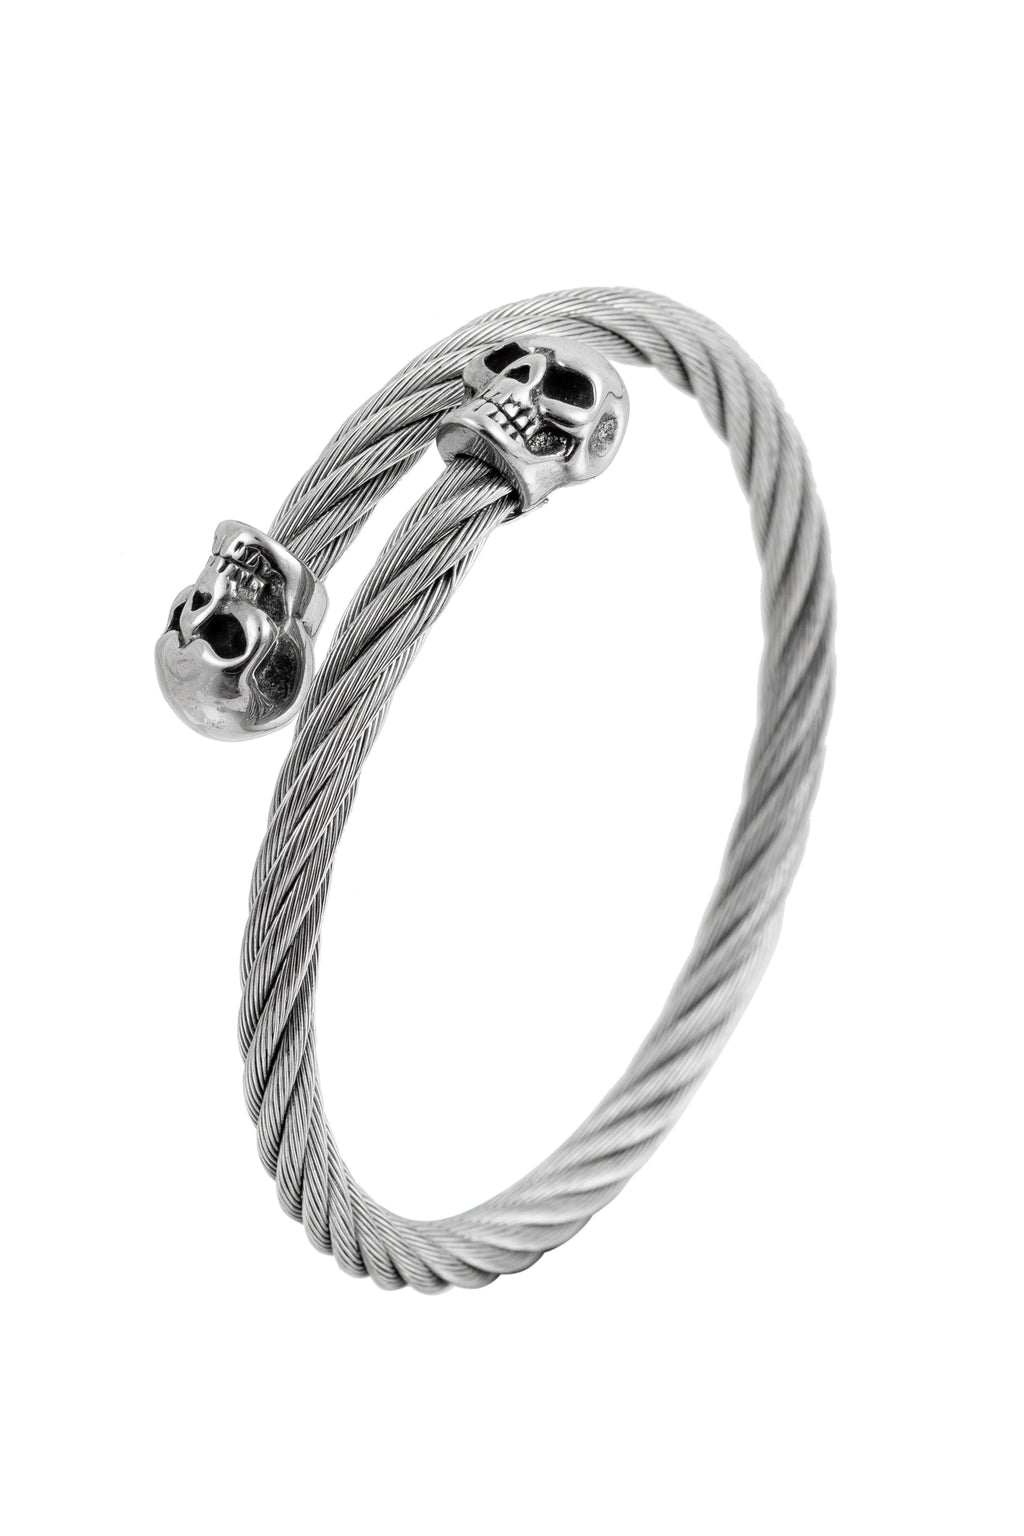 Double skull titanium silver cuff wire bracelet.